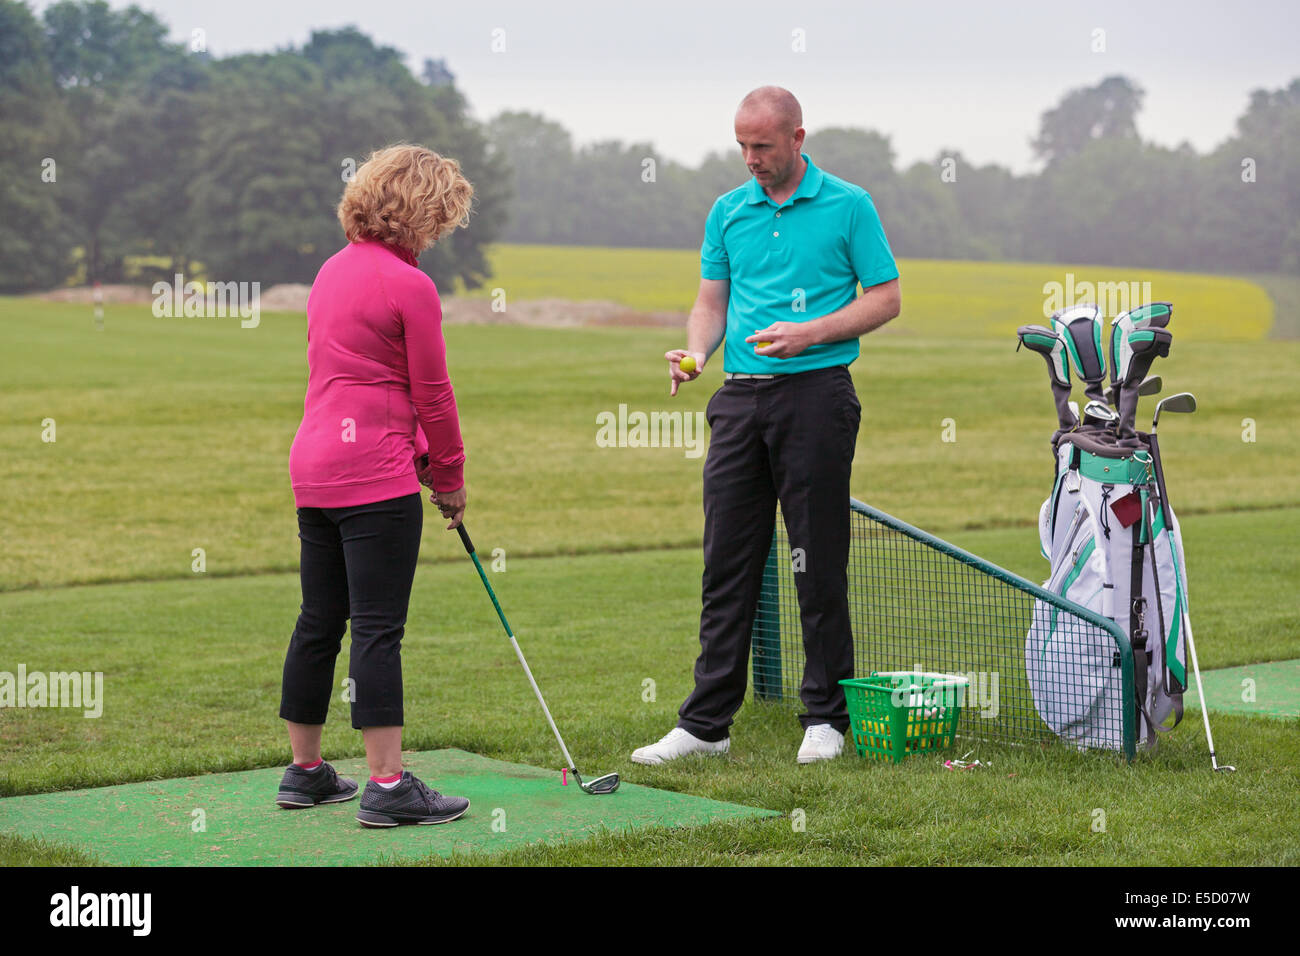 Un golfeur dame est enseigné à jouer au golf par un Pro sur une pratique d'entraînement. Banque D'Images